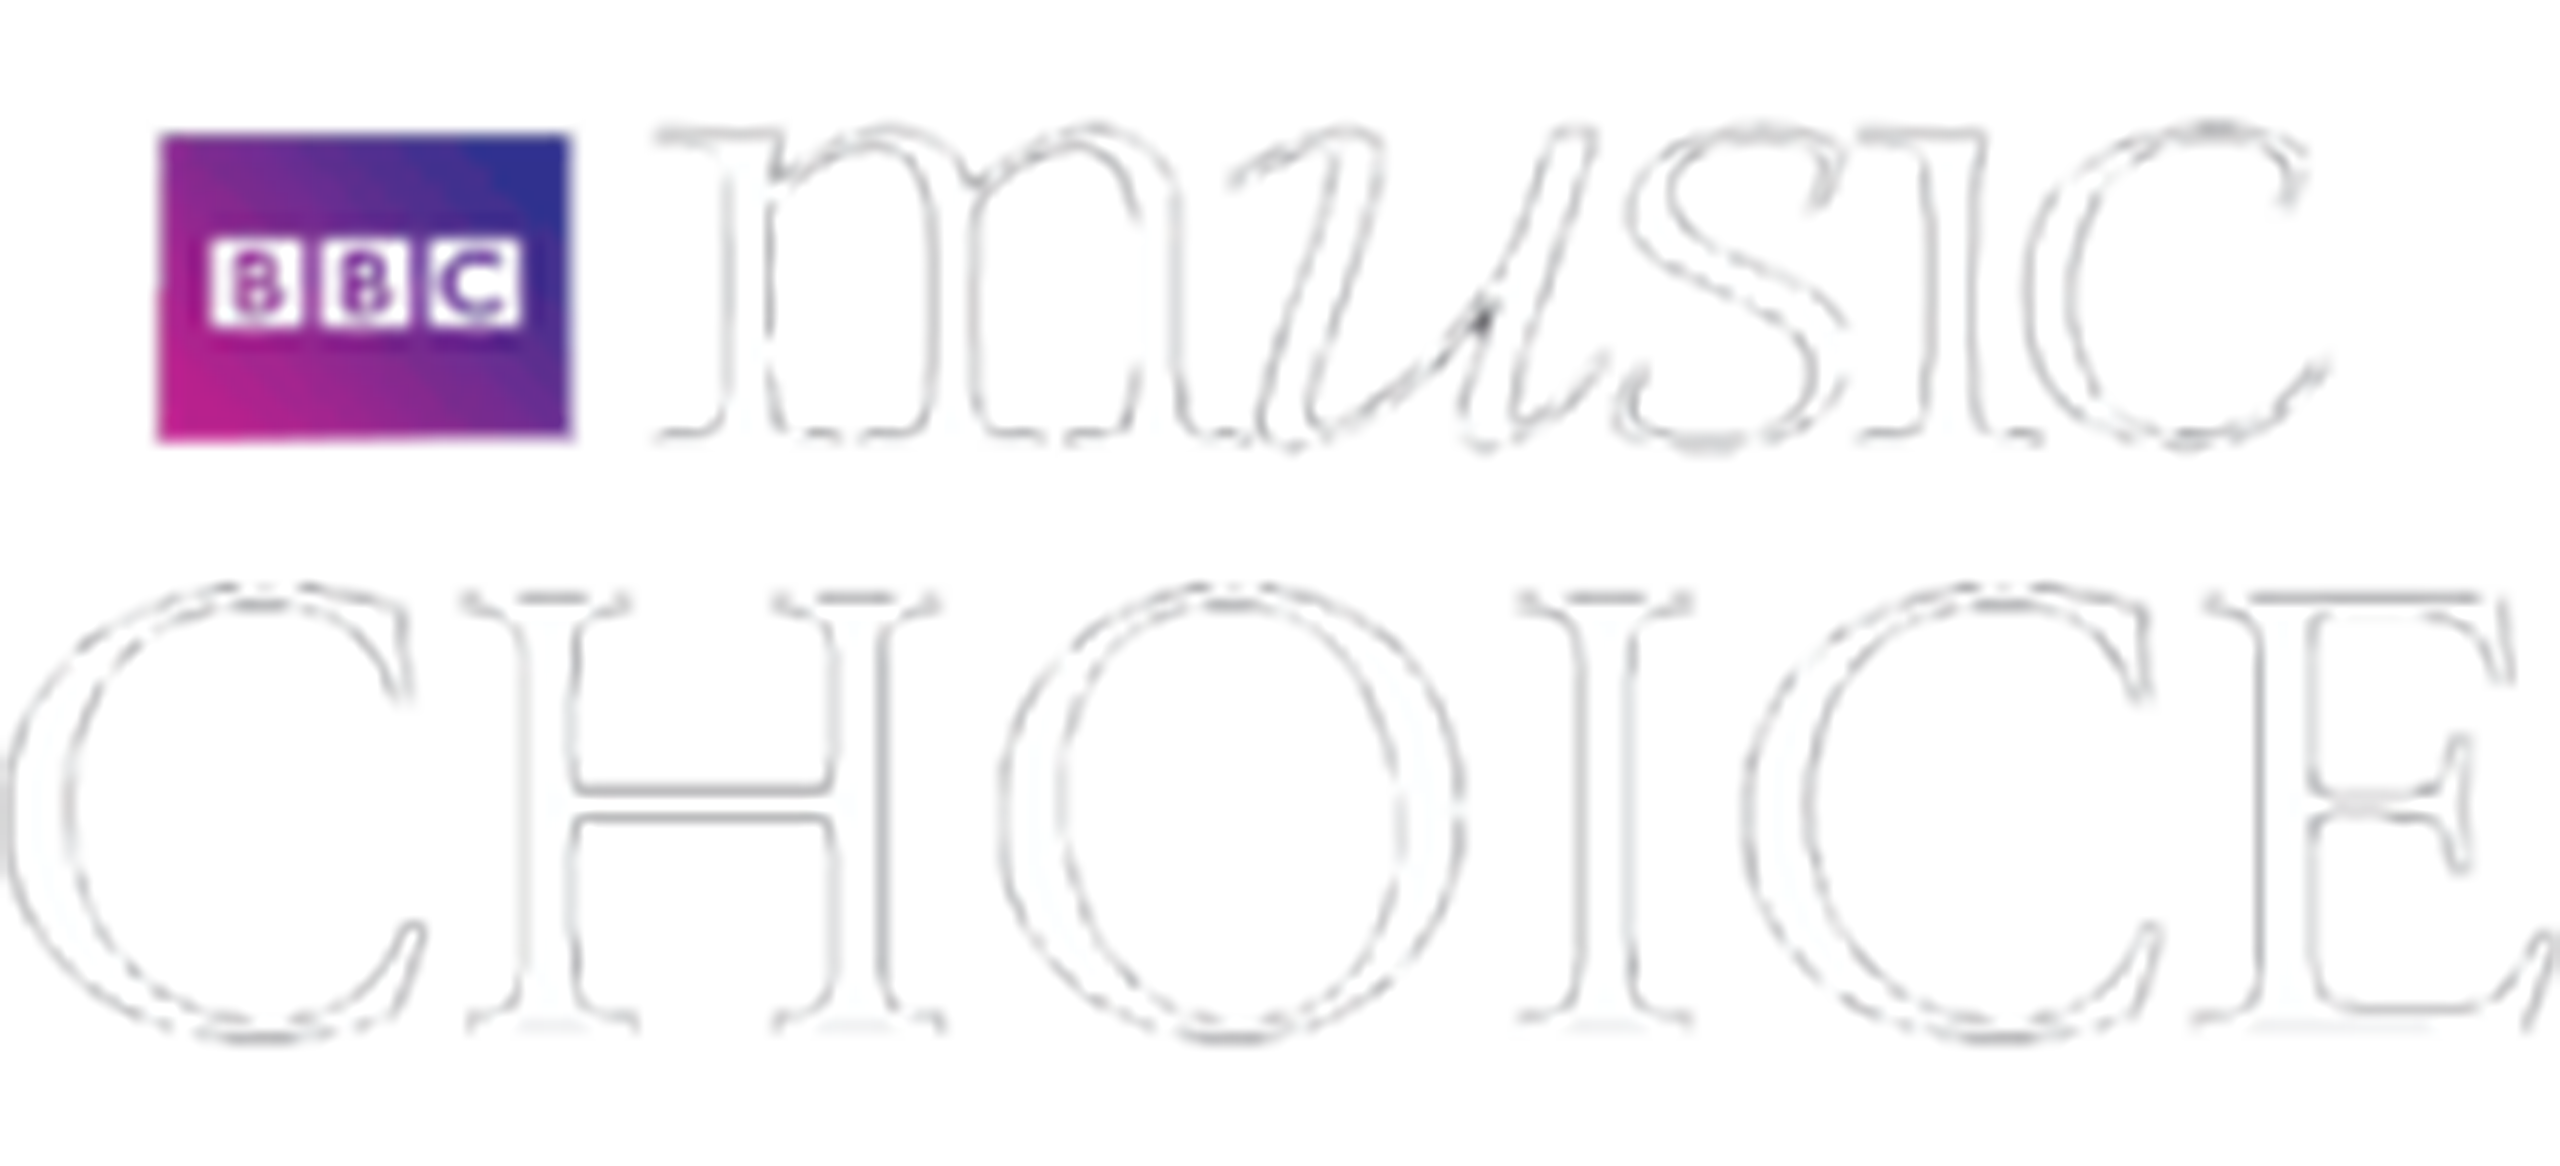 BBC Music Choice logo award